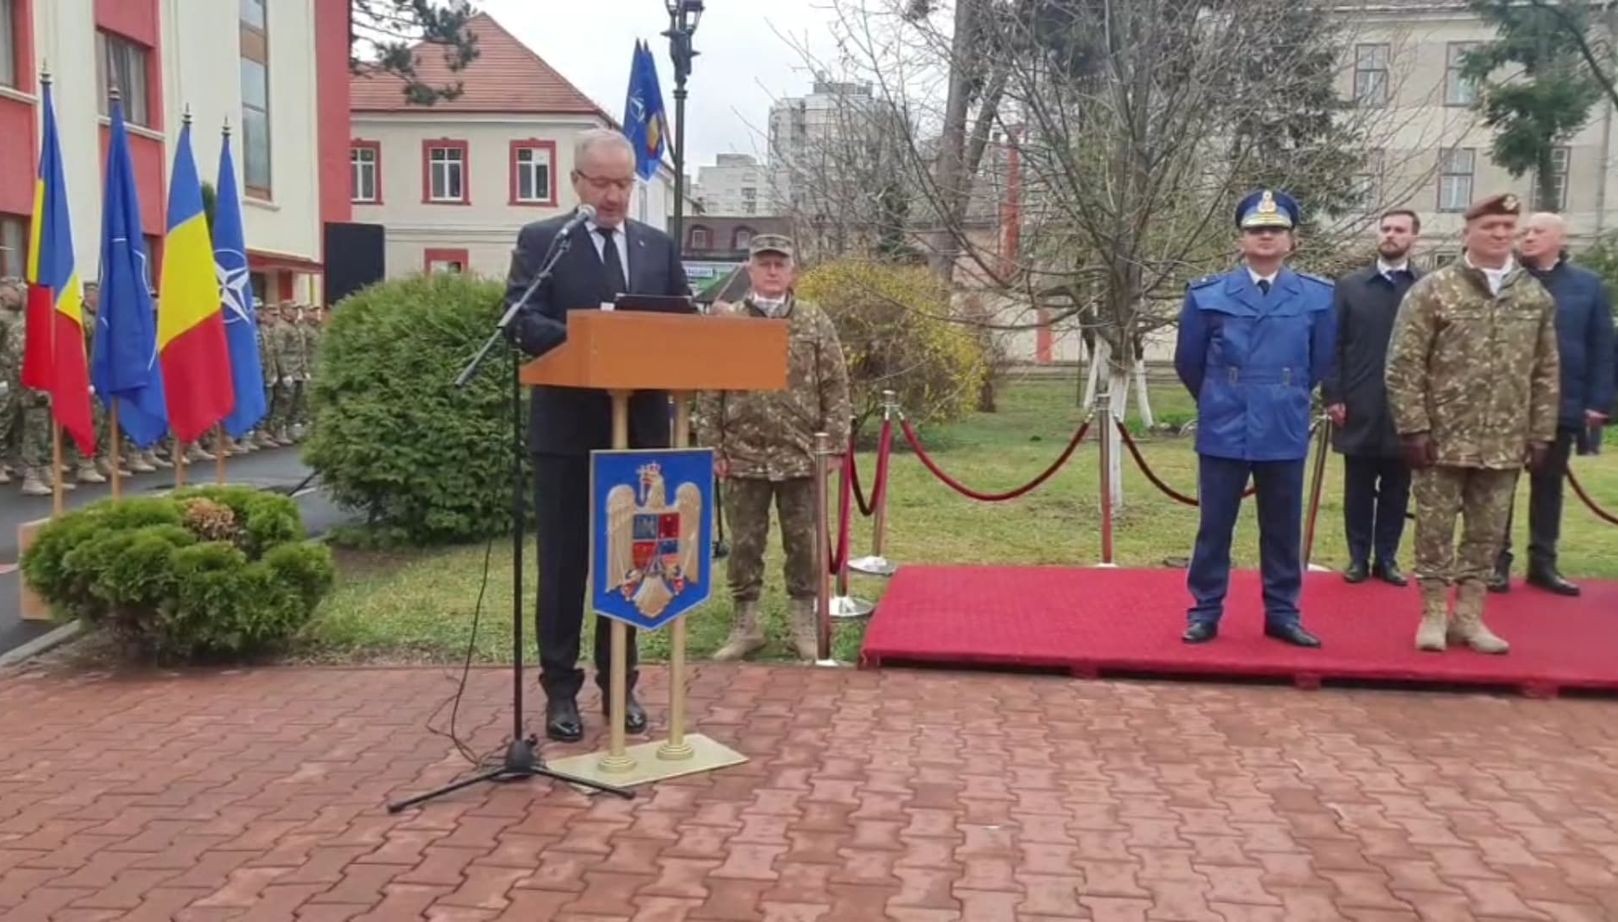 Védelmi miniszter: Románia számára a NATO jelenti a legerősebb biztonsági garanciát